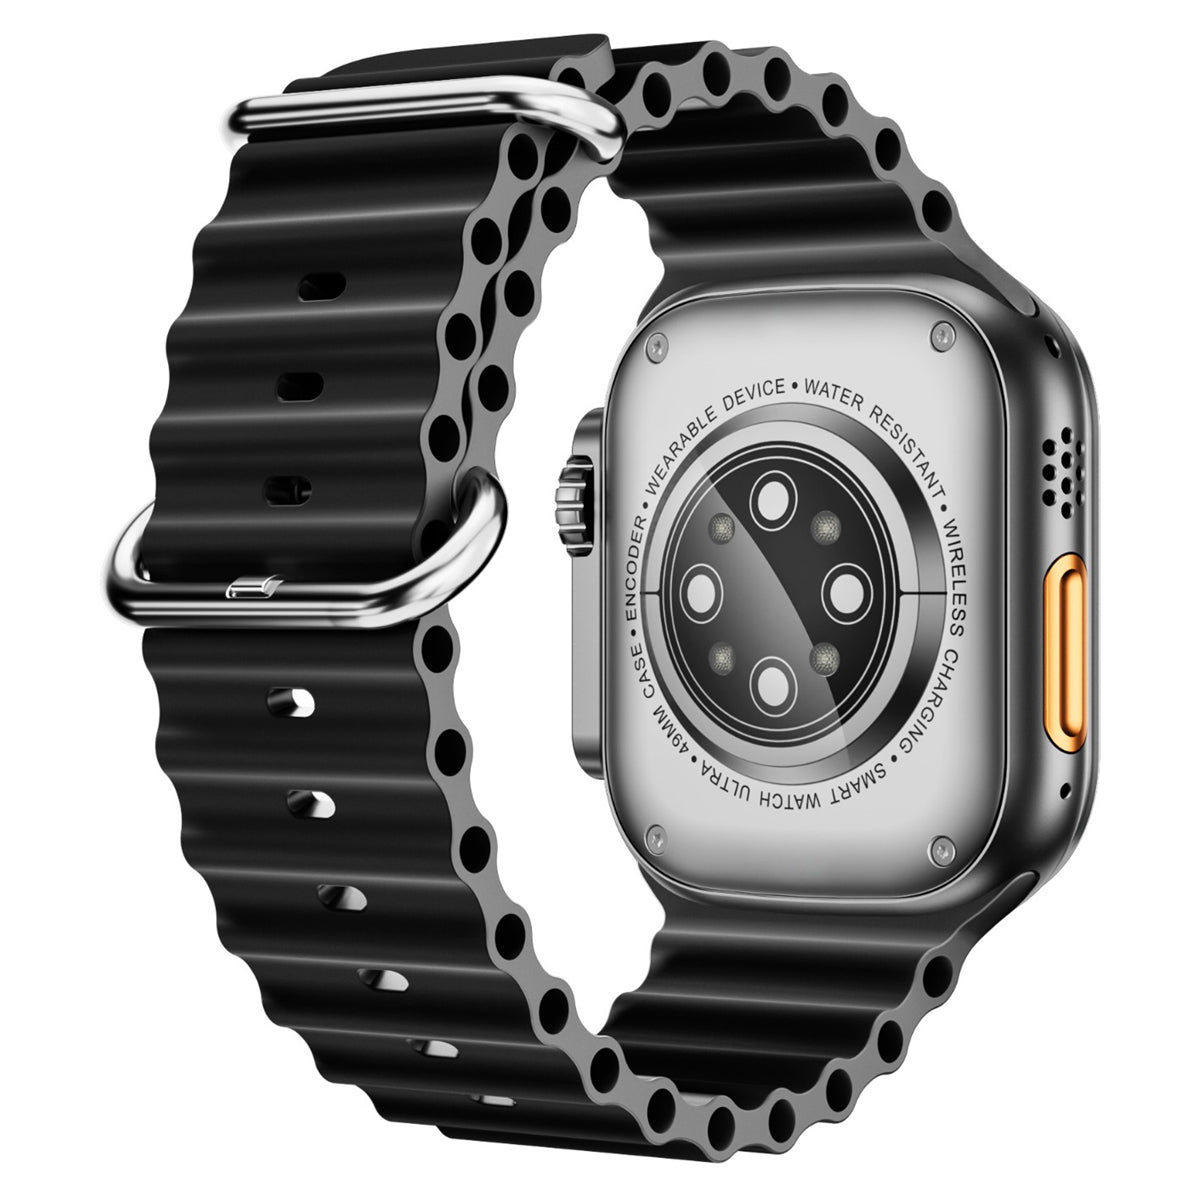 Reloj Smart Watch Ws9 Ultra Fralugio Ecg Hr Bp Spo2 Llamadas